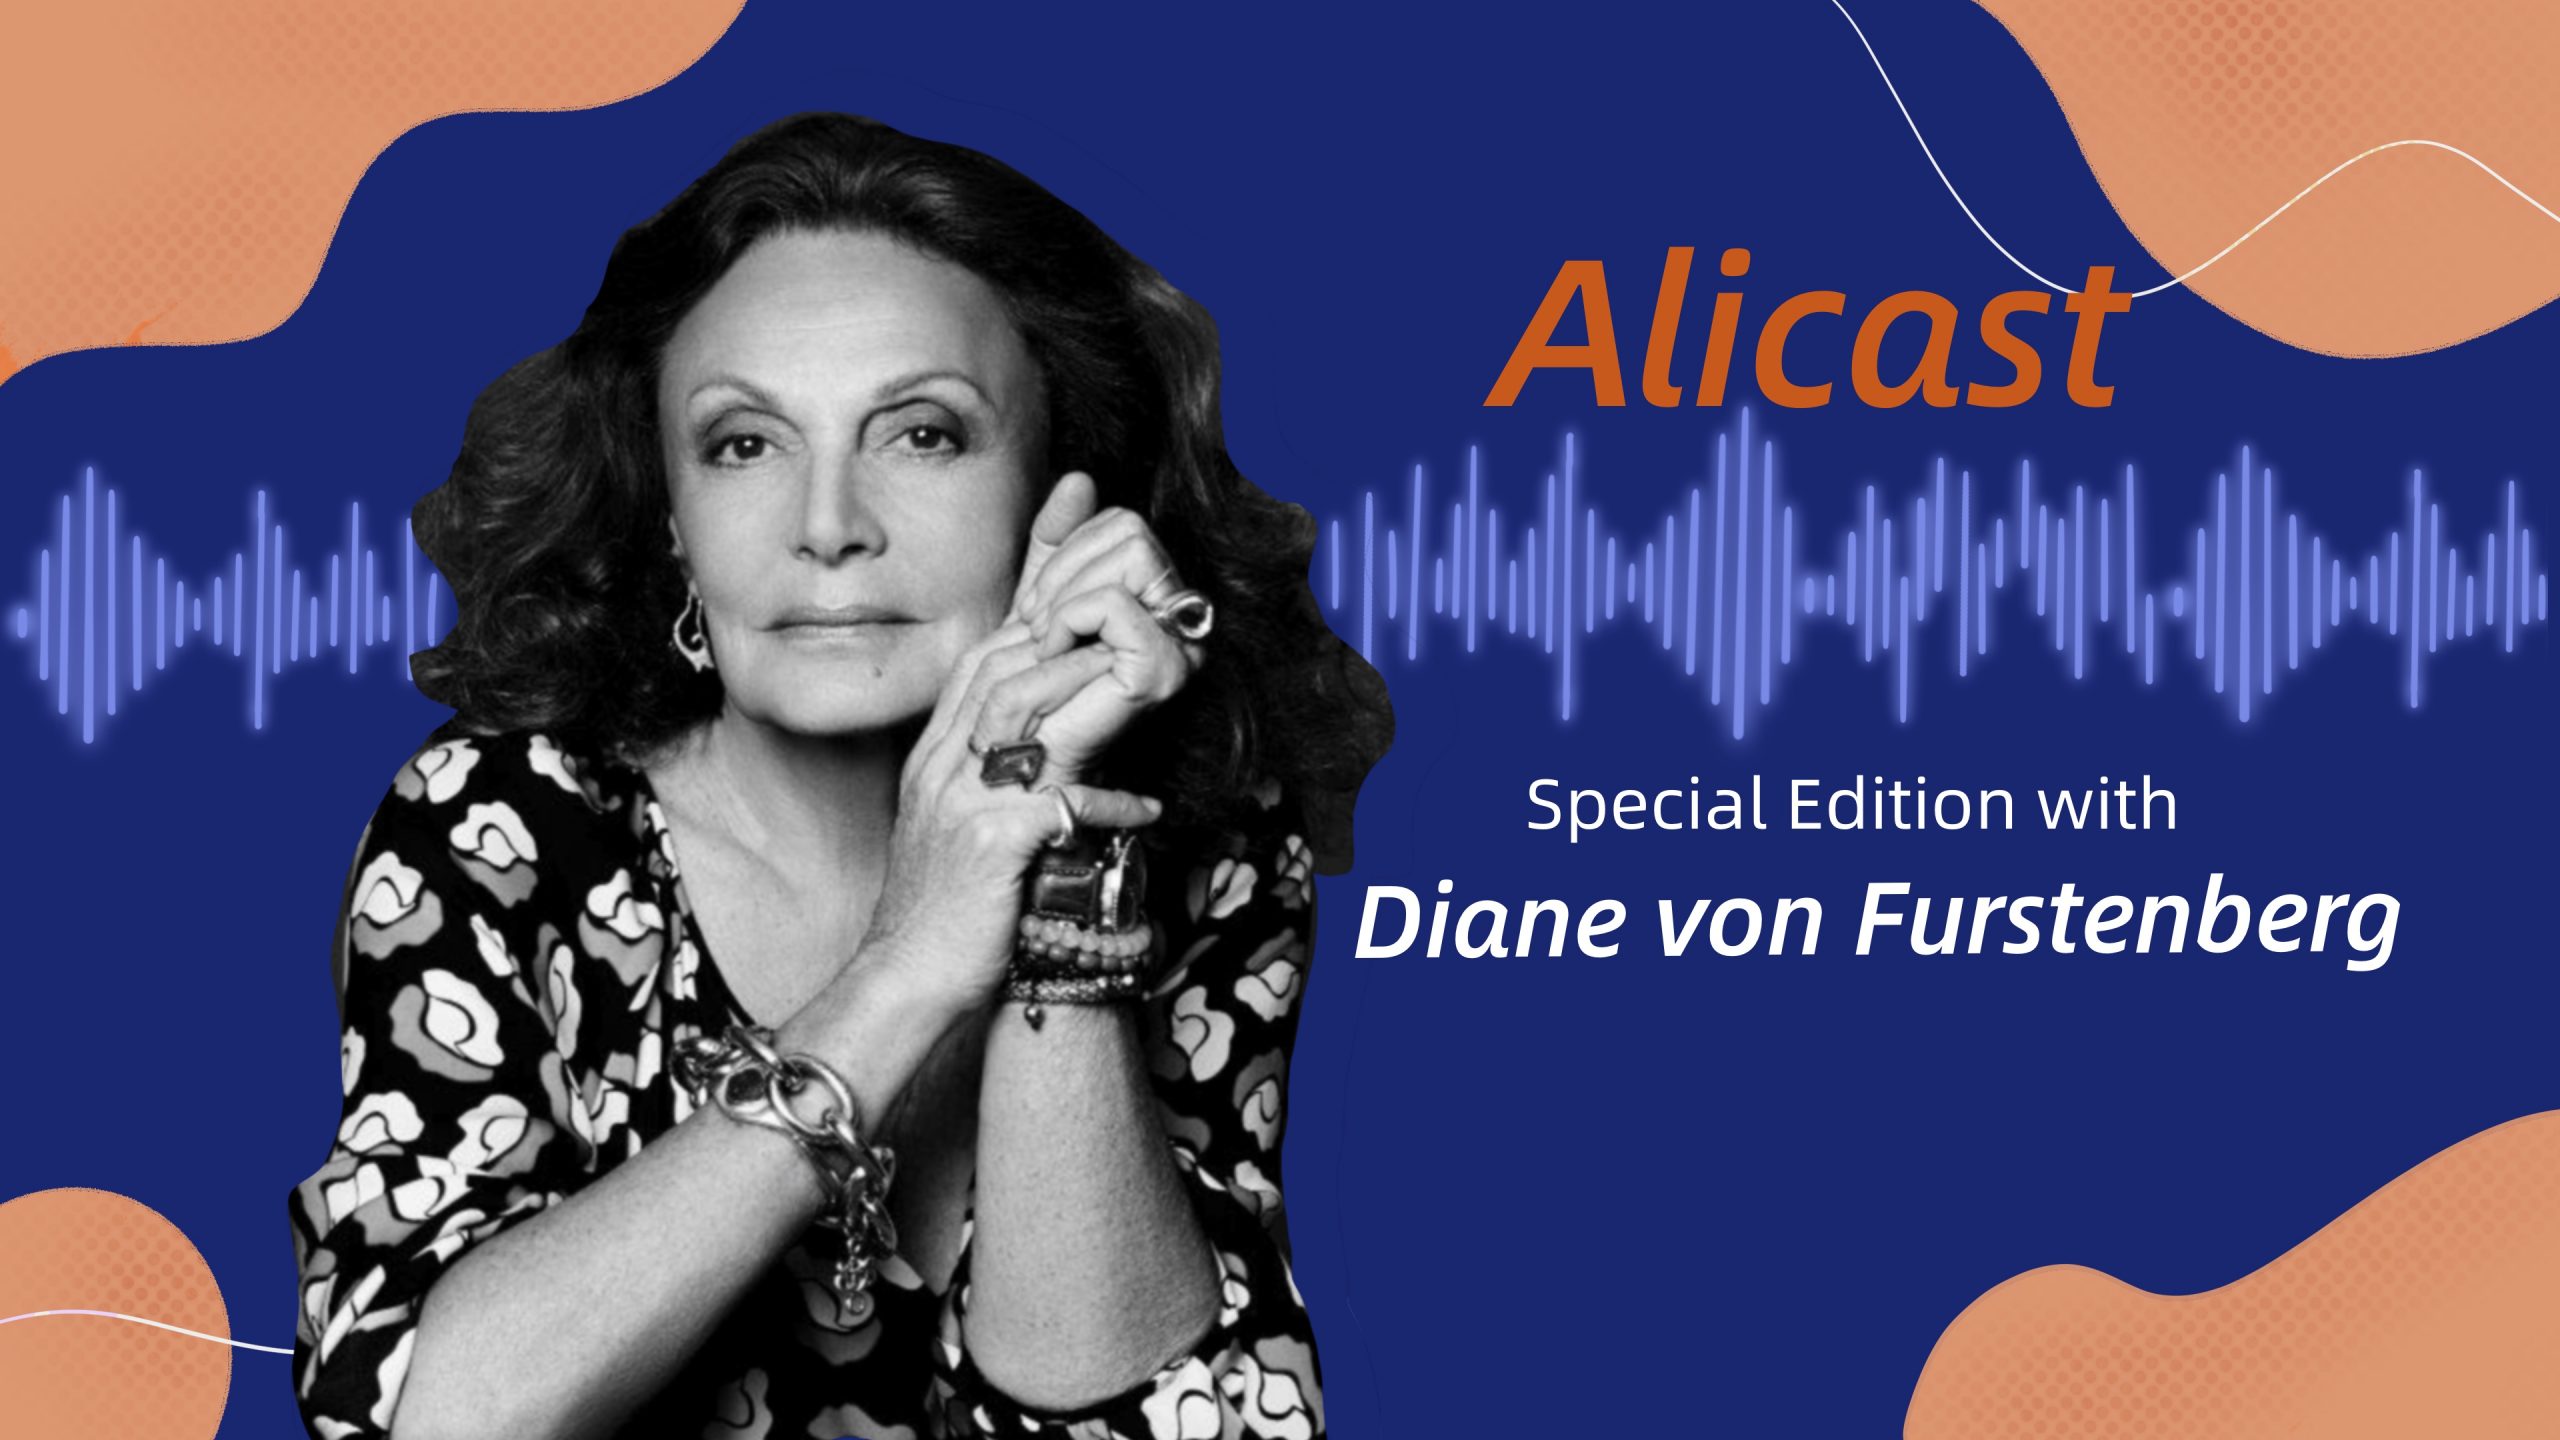 Alicast Diane von Furstenberg